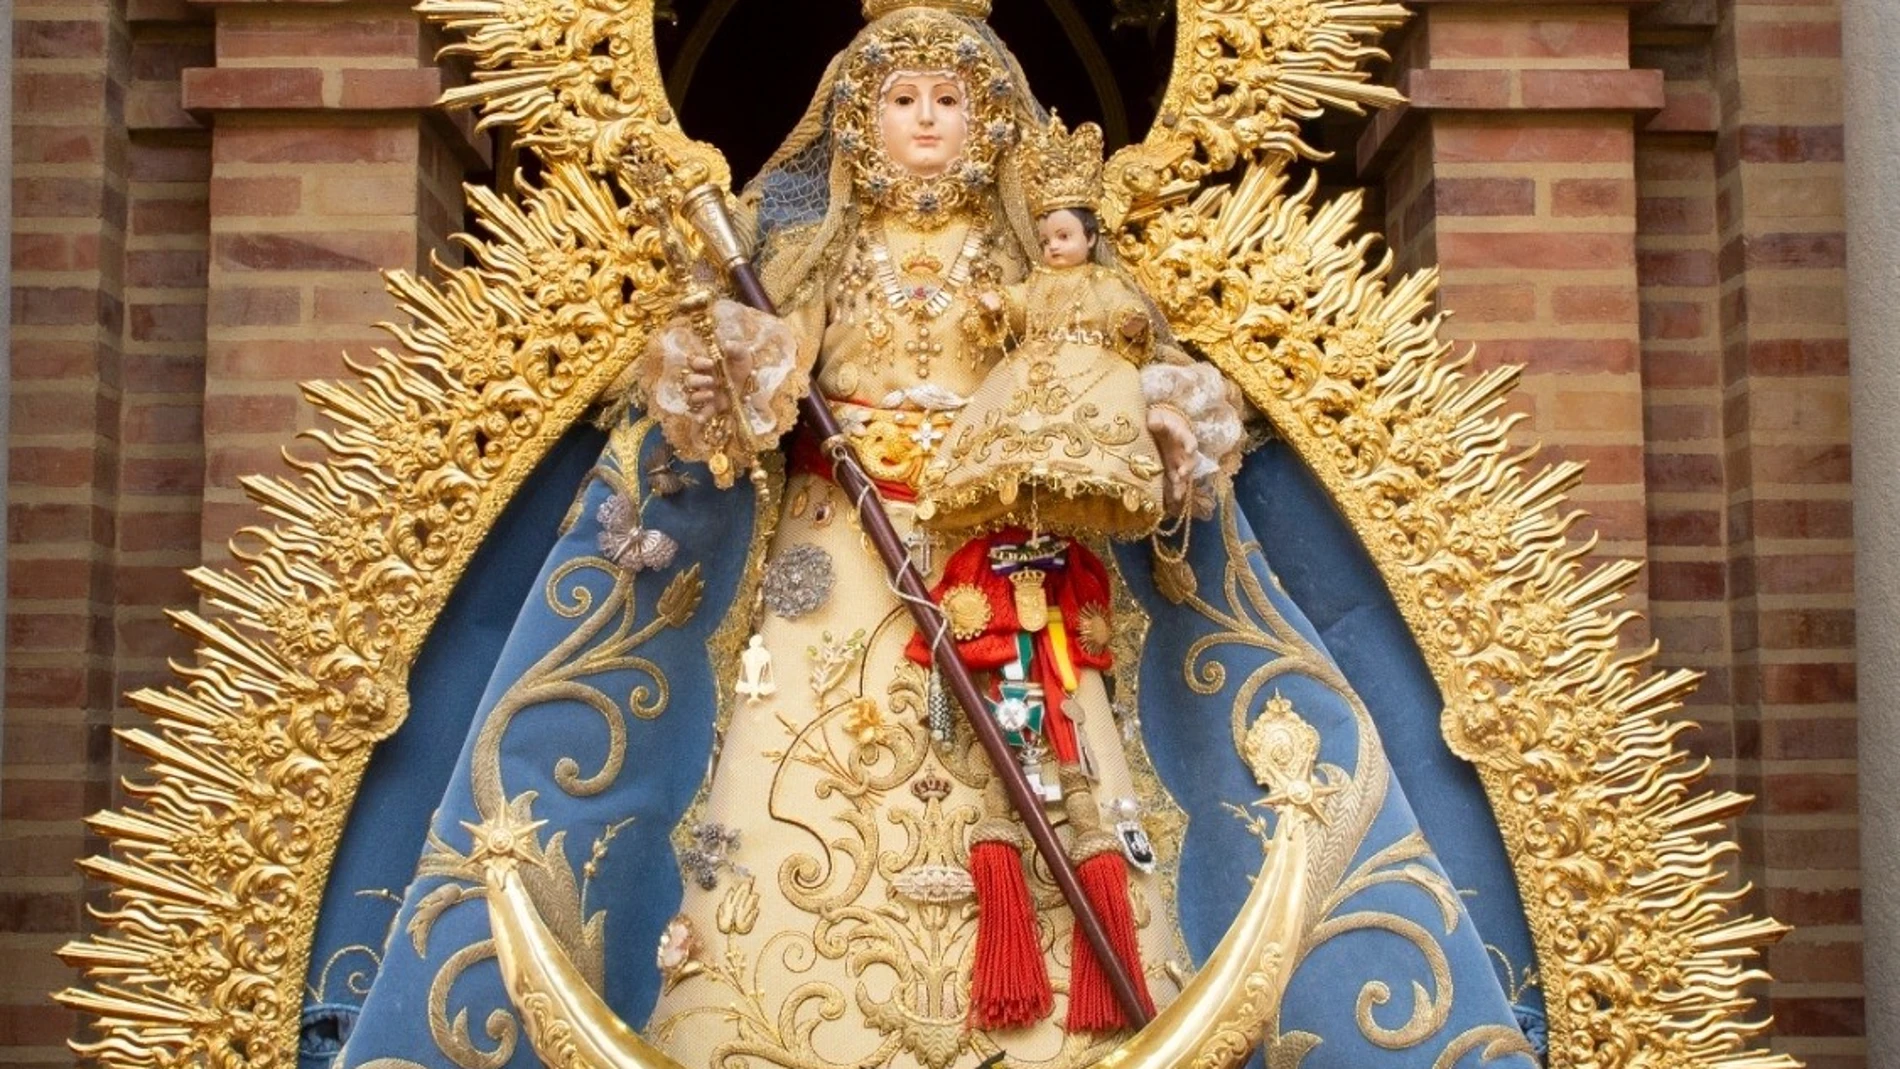 La Virgen de Alharilla en su santuario, preparada para la romería.
JAVIER RUIZ
11/05/2023